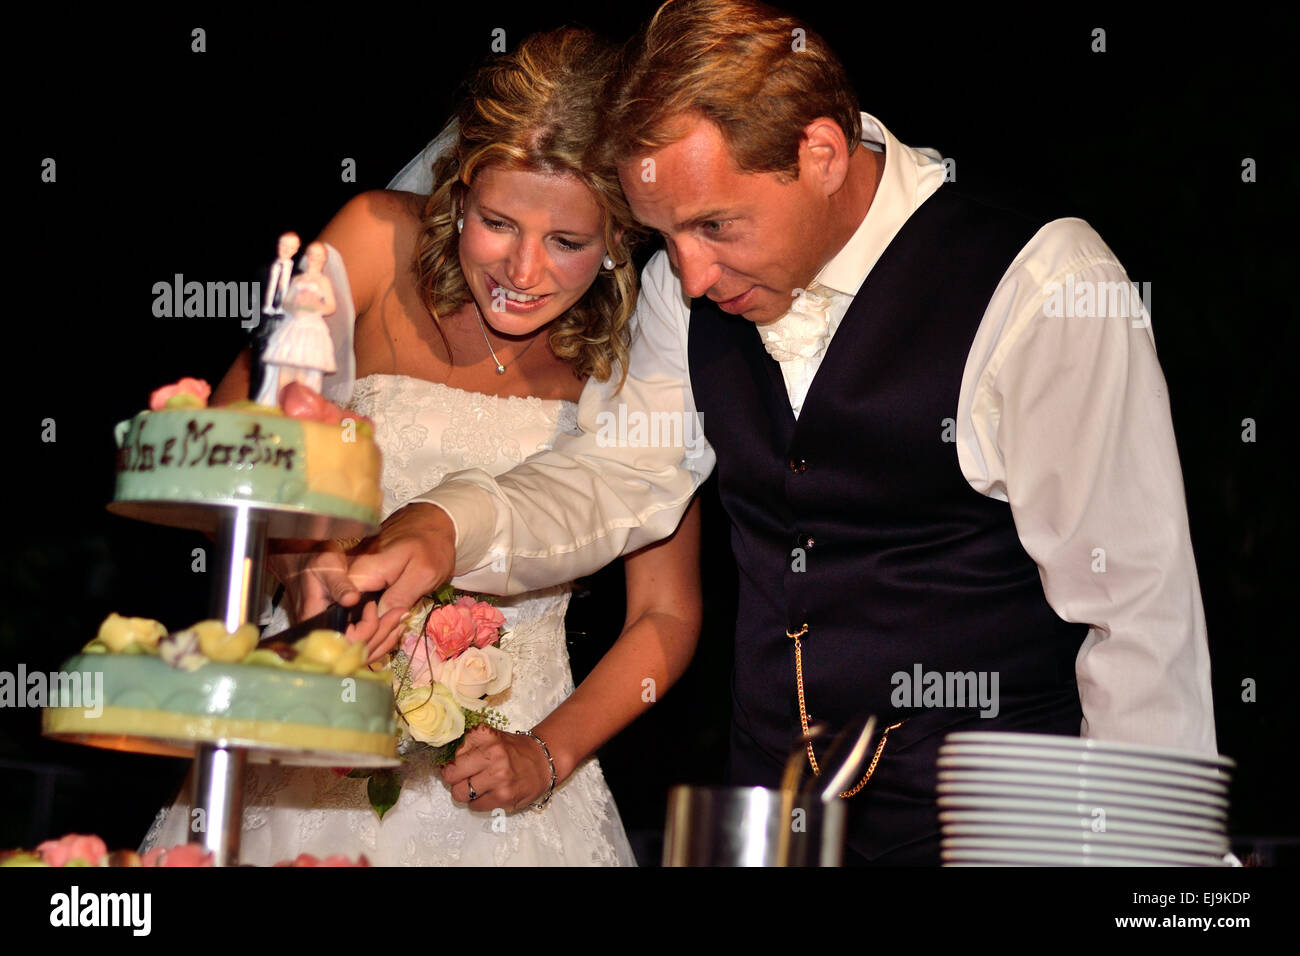 Bridal Couple with Wedding Cake Stock Photo